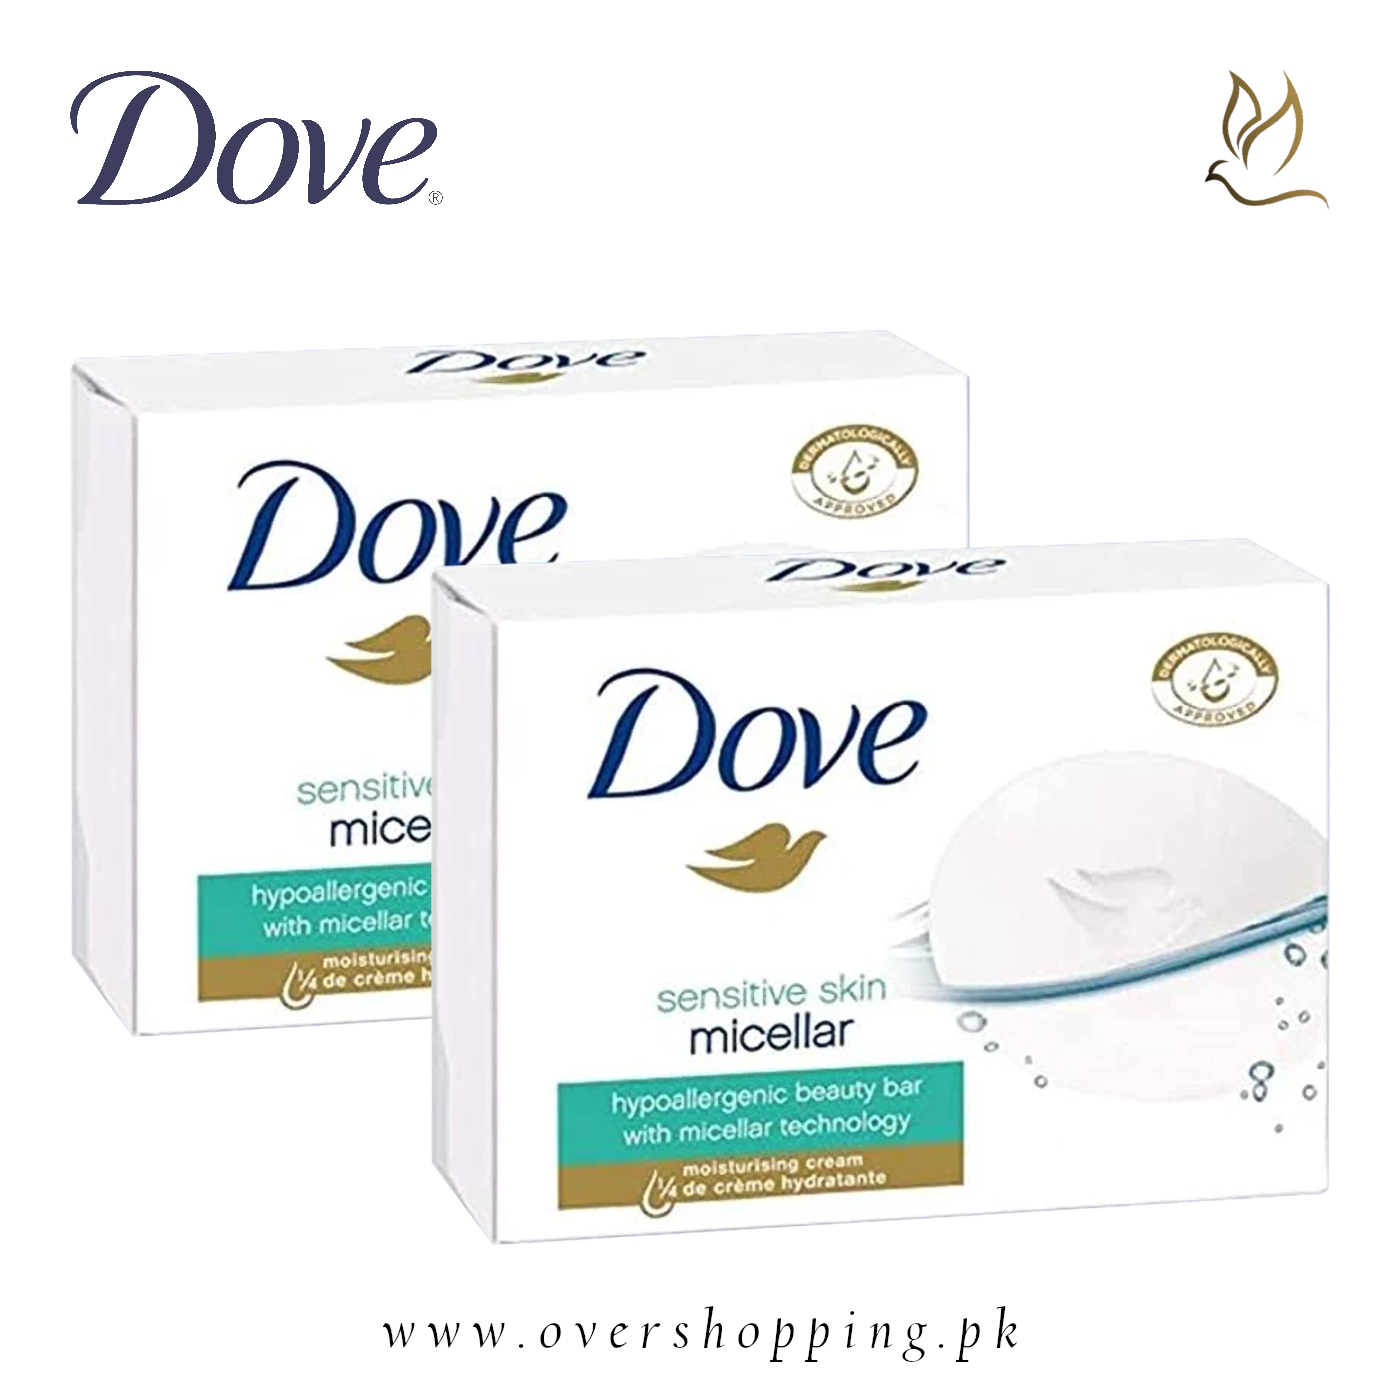 Dove Sensitive Skin Micellar Body Soap Bar, 100g (Pack of 2)